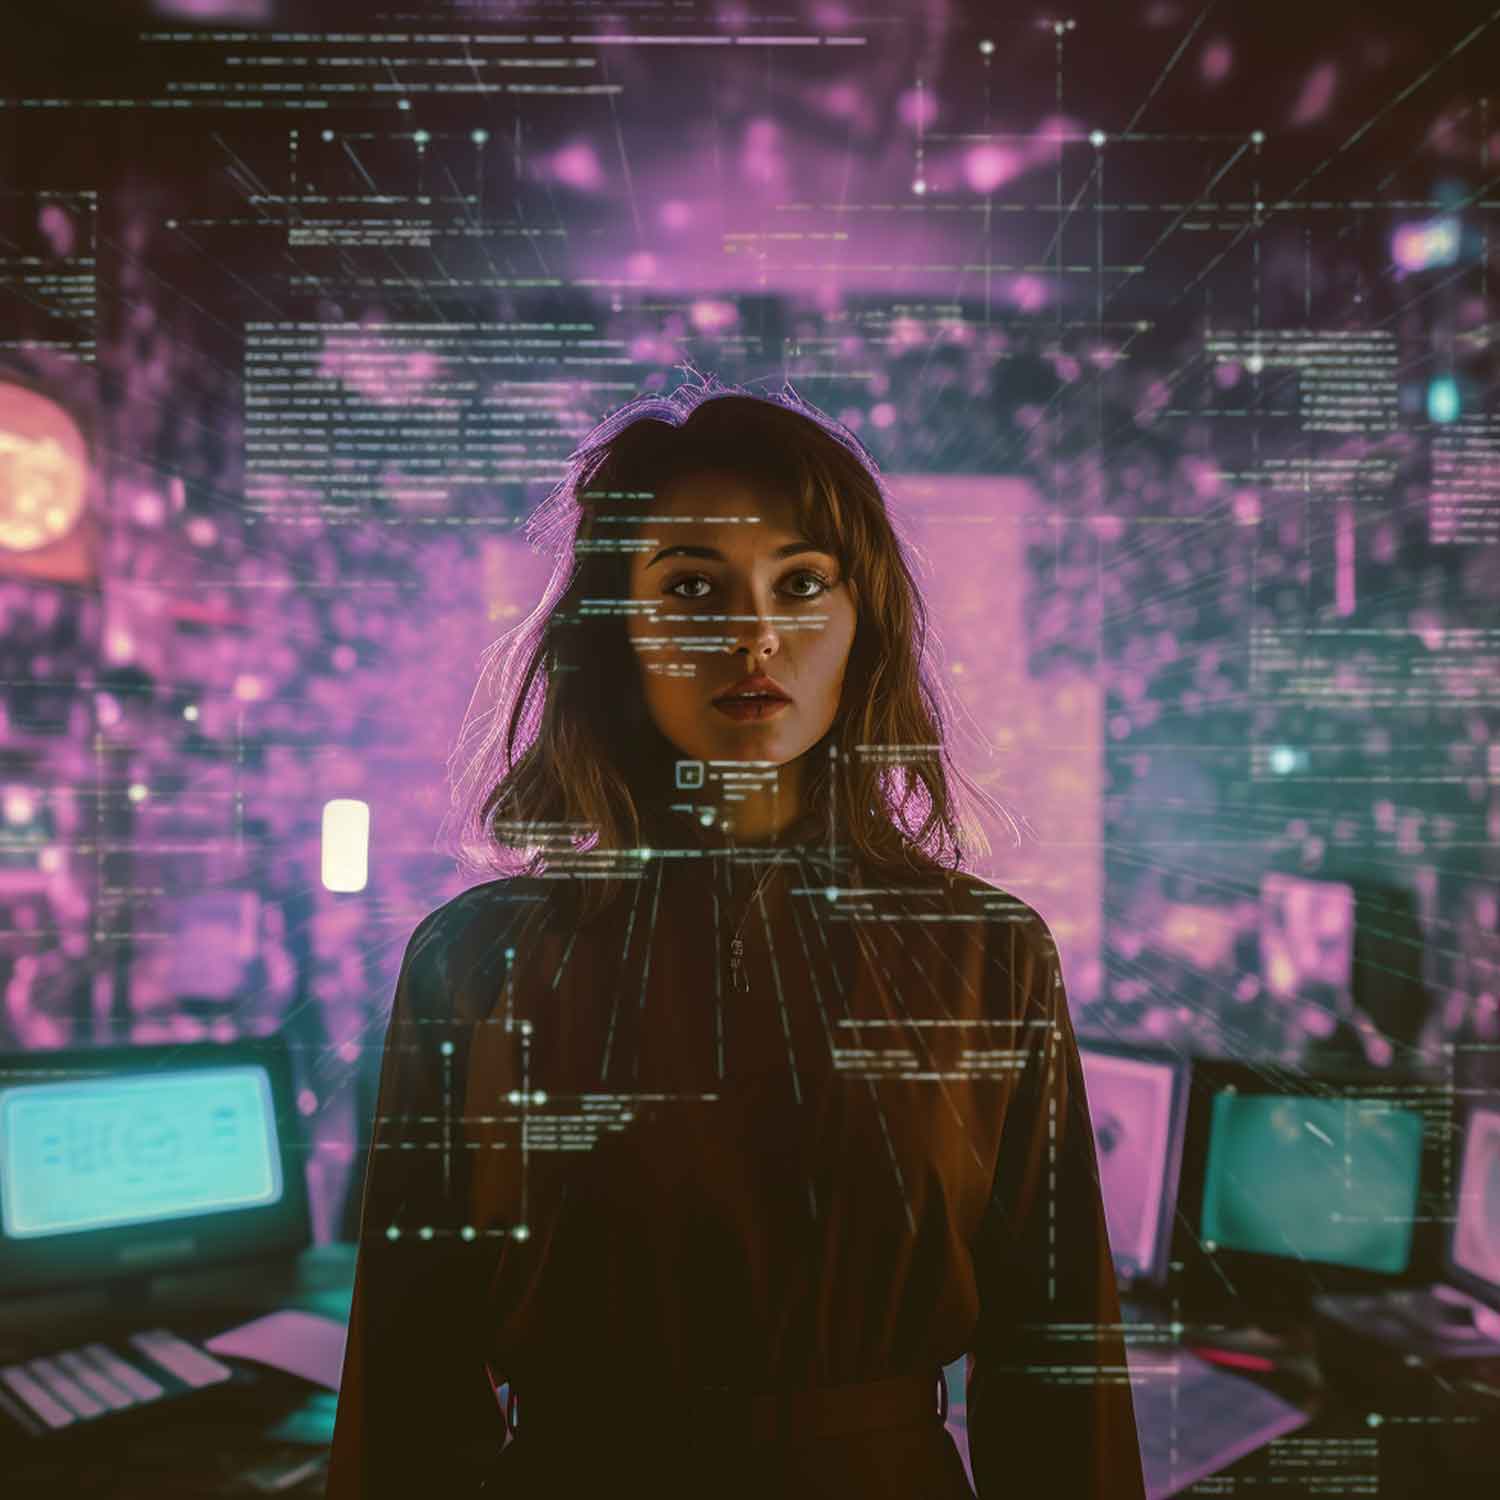 Frau vor einem digitalen Interface, das Künstliche Intelligenz symbolisiert.